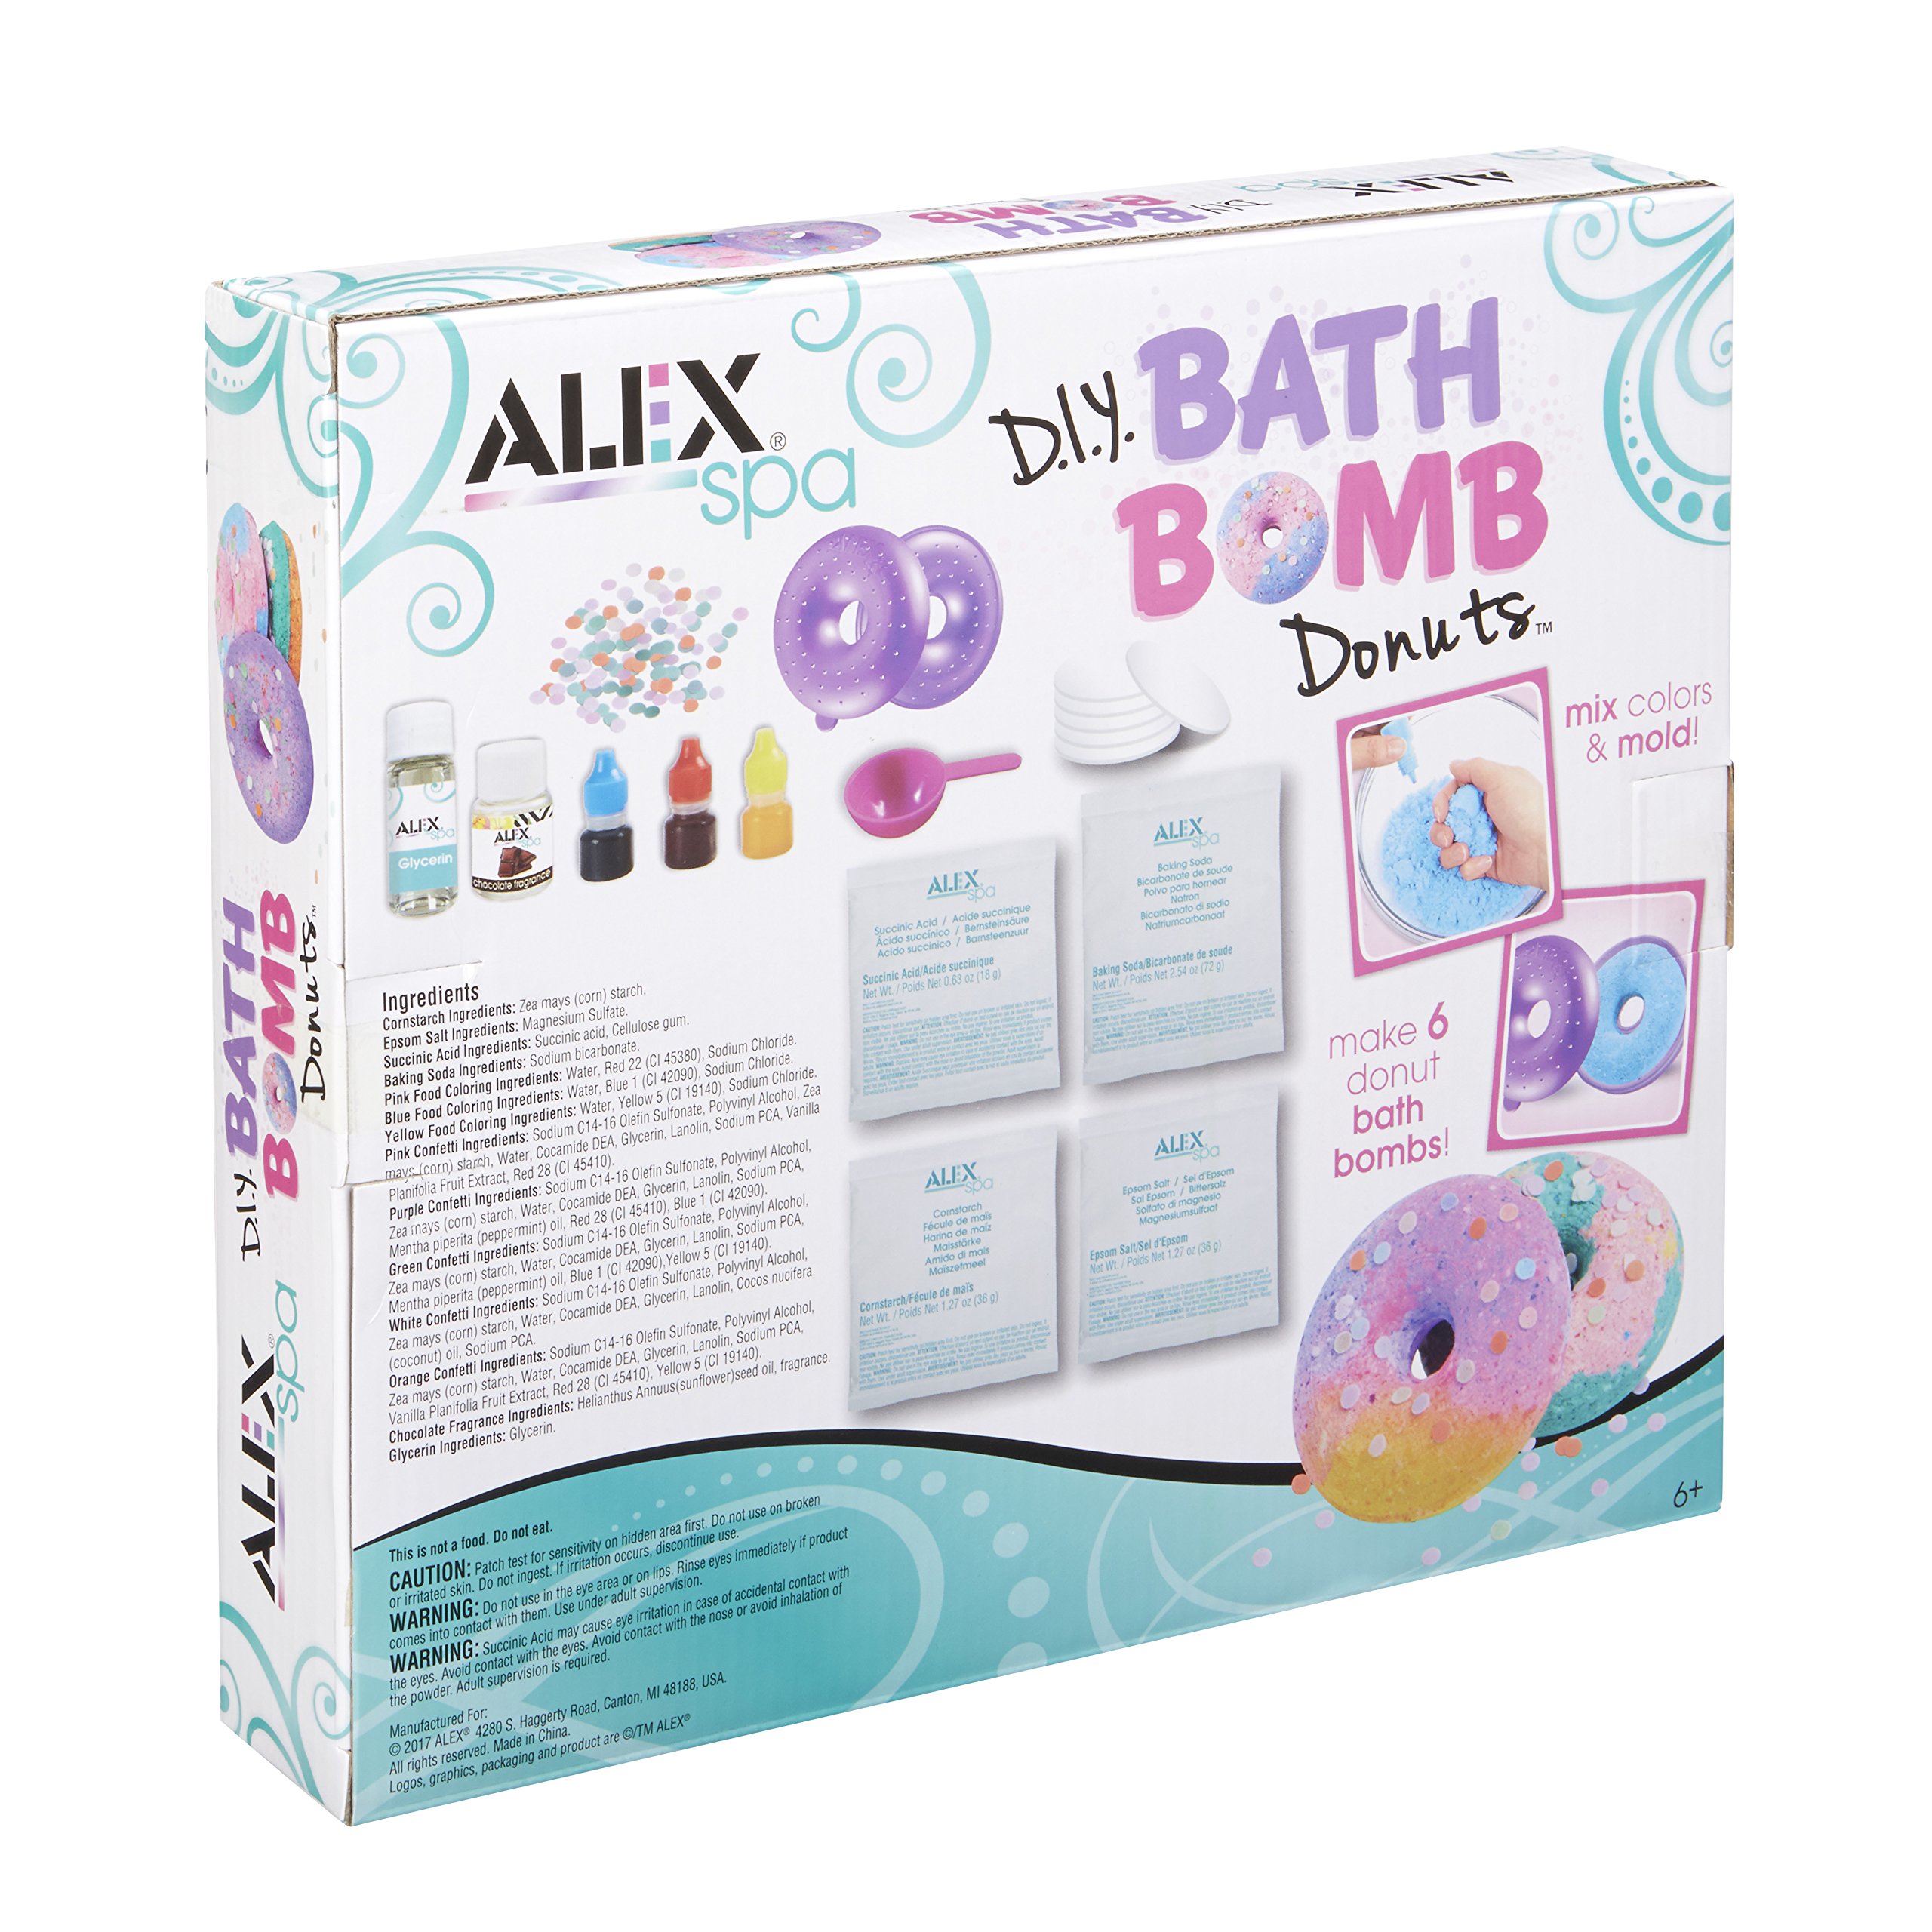 Alex Spa DIY Bath Bomb Donuts Kids Bath Bomb Soap Kit